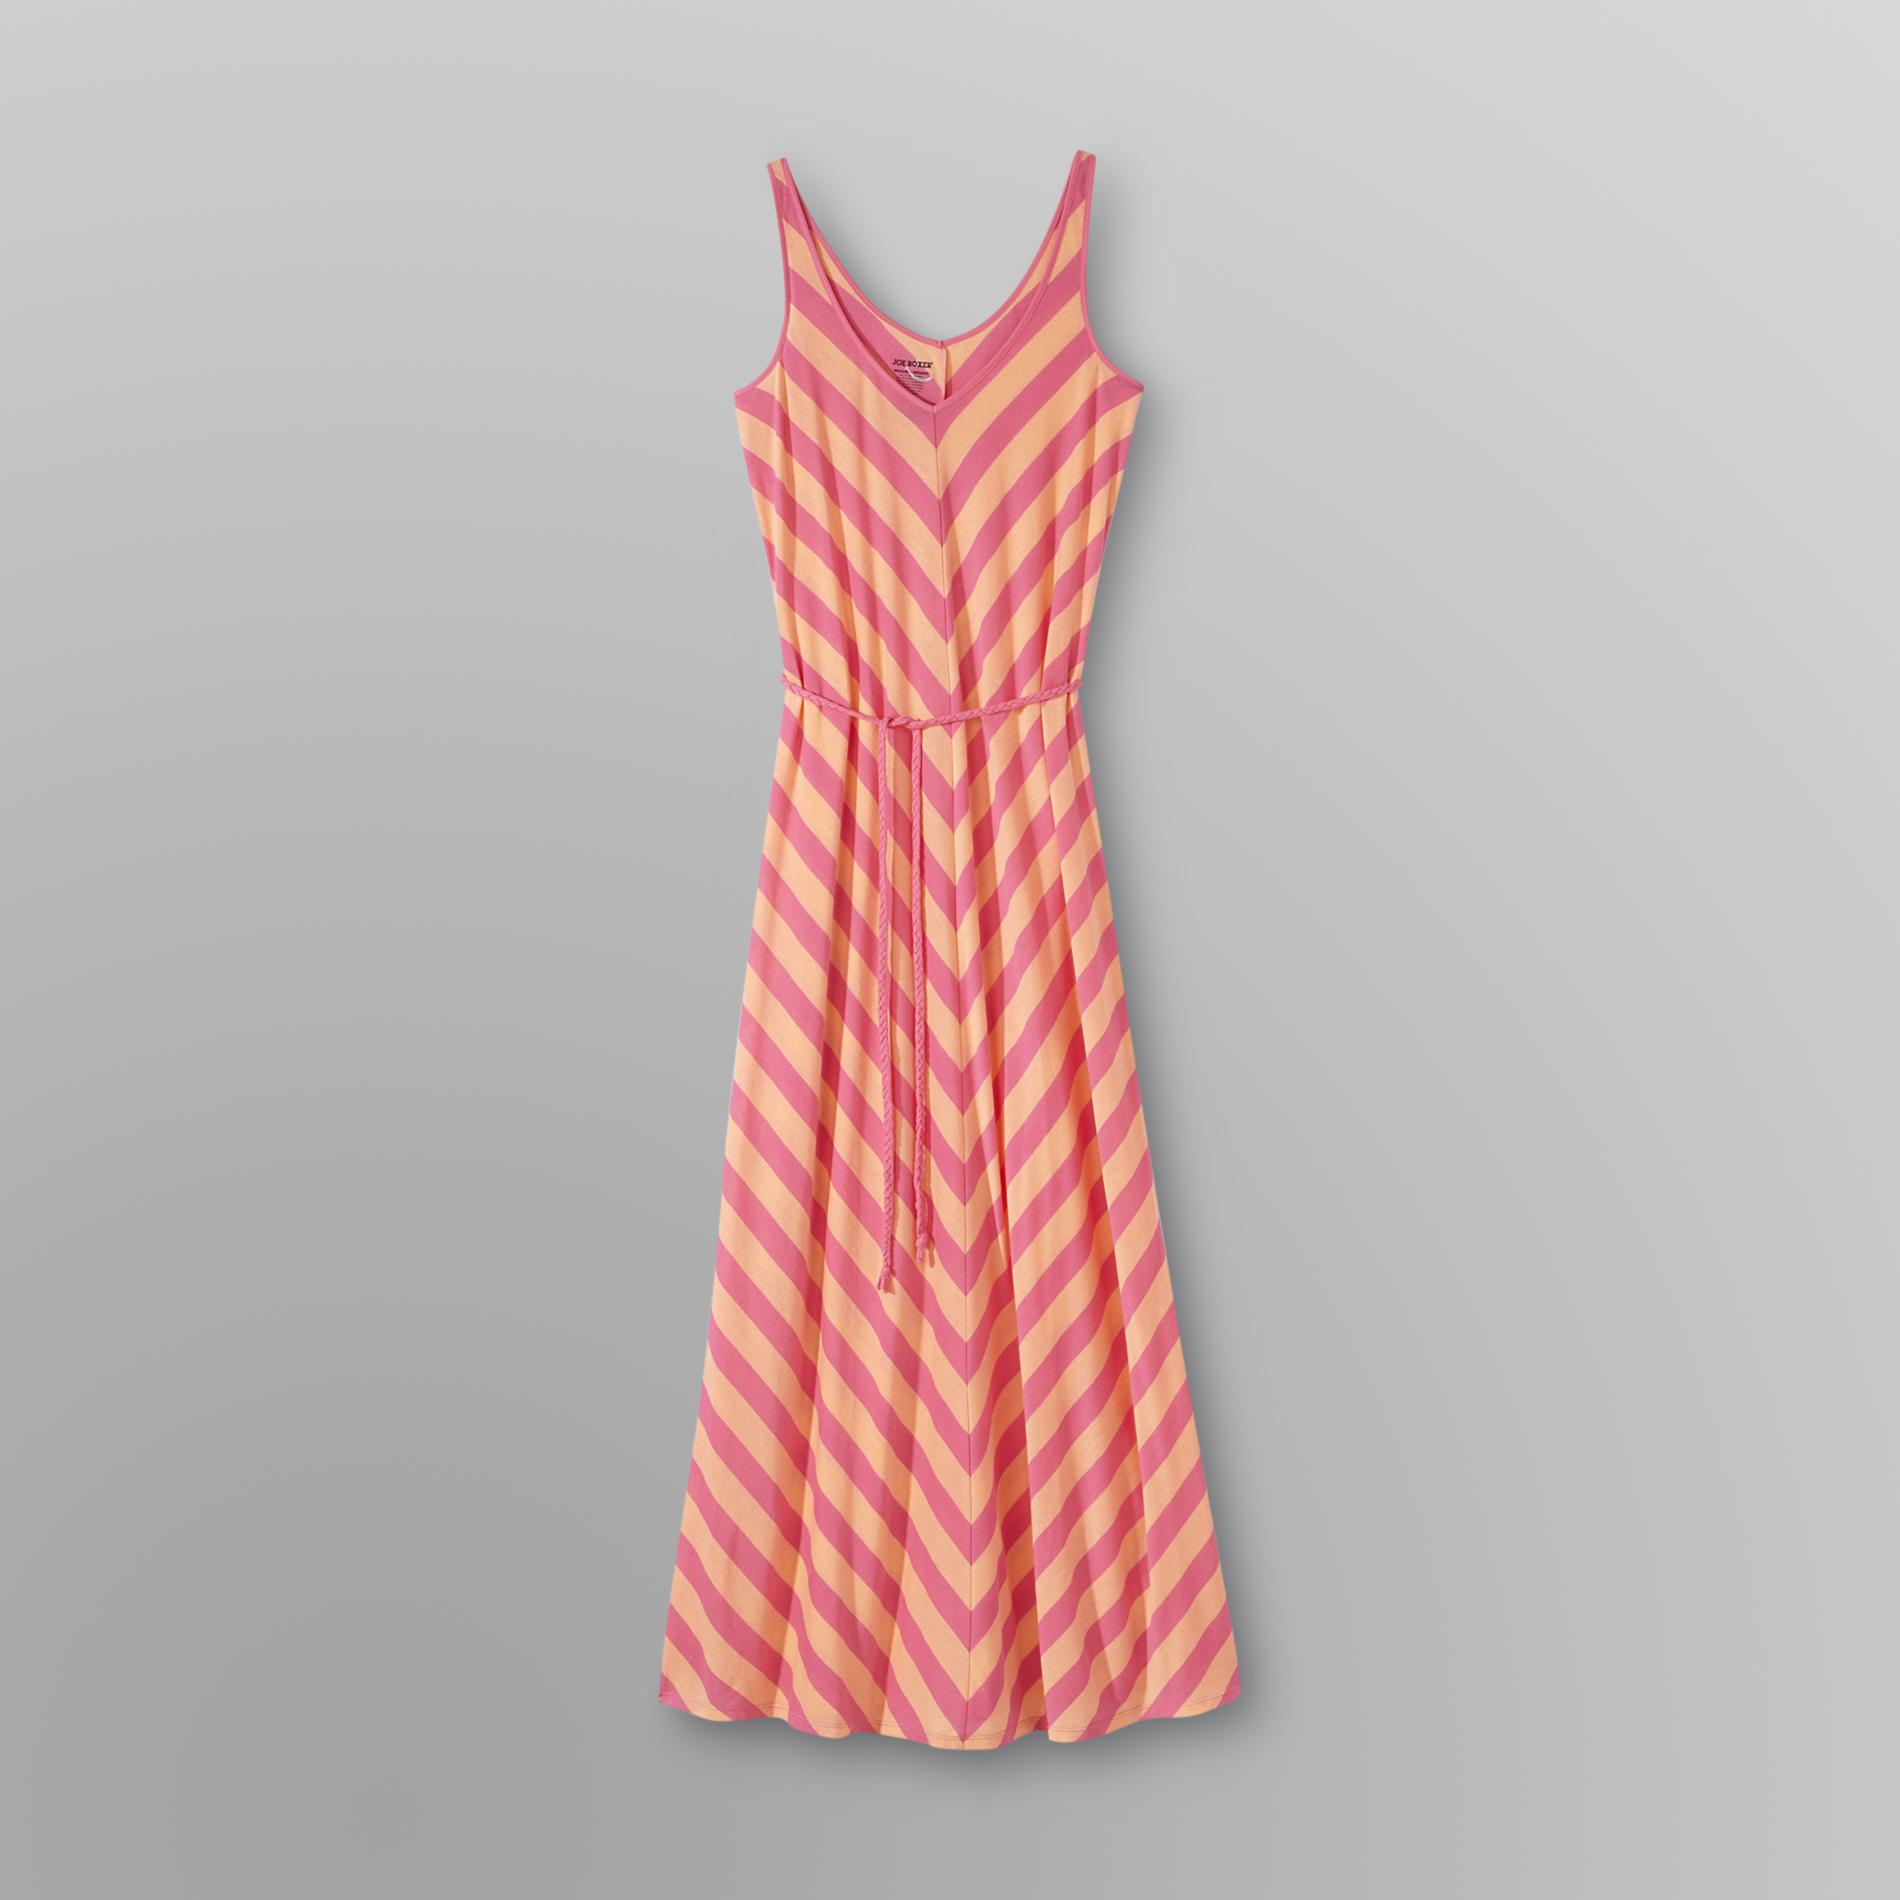 Joe Boxer Women's Maxi Dress - Chevron Stripes